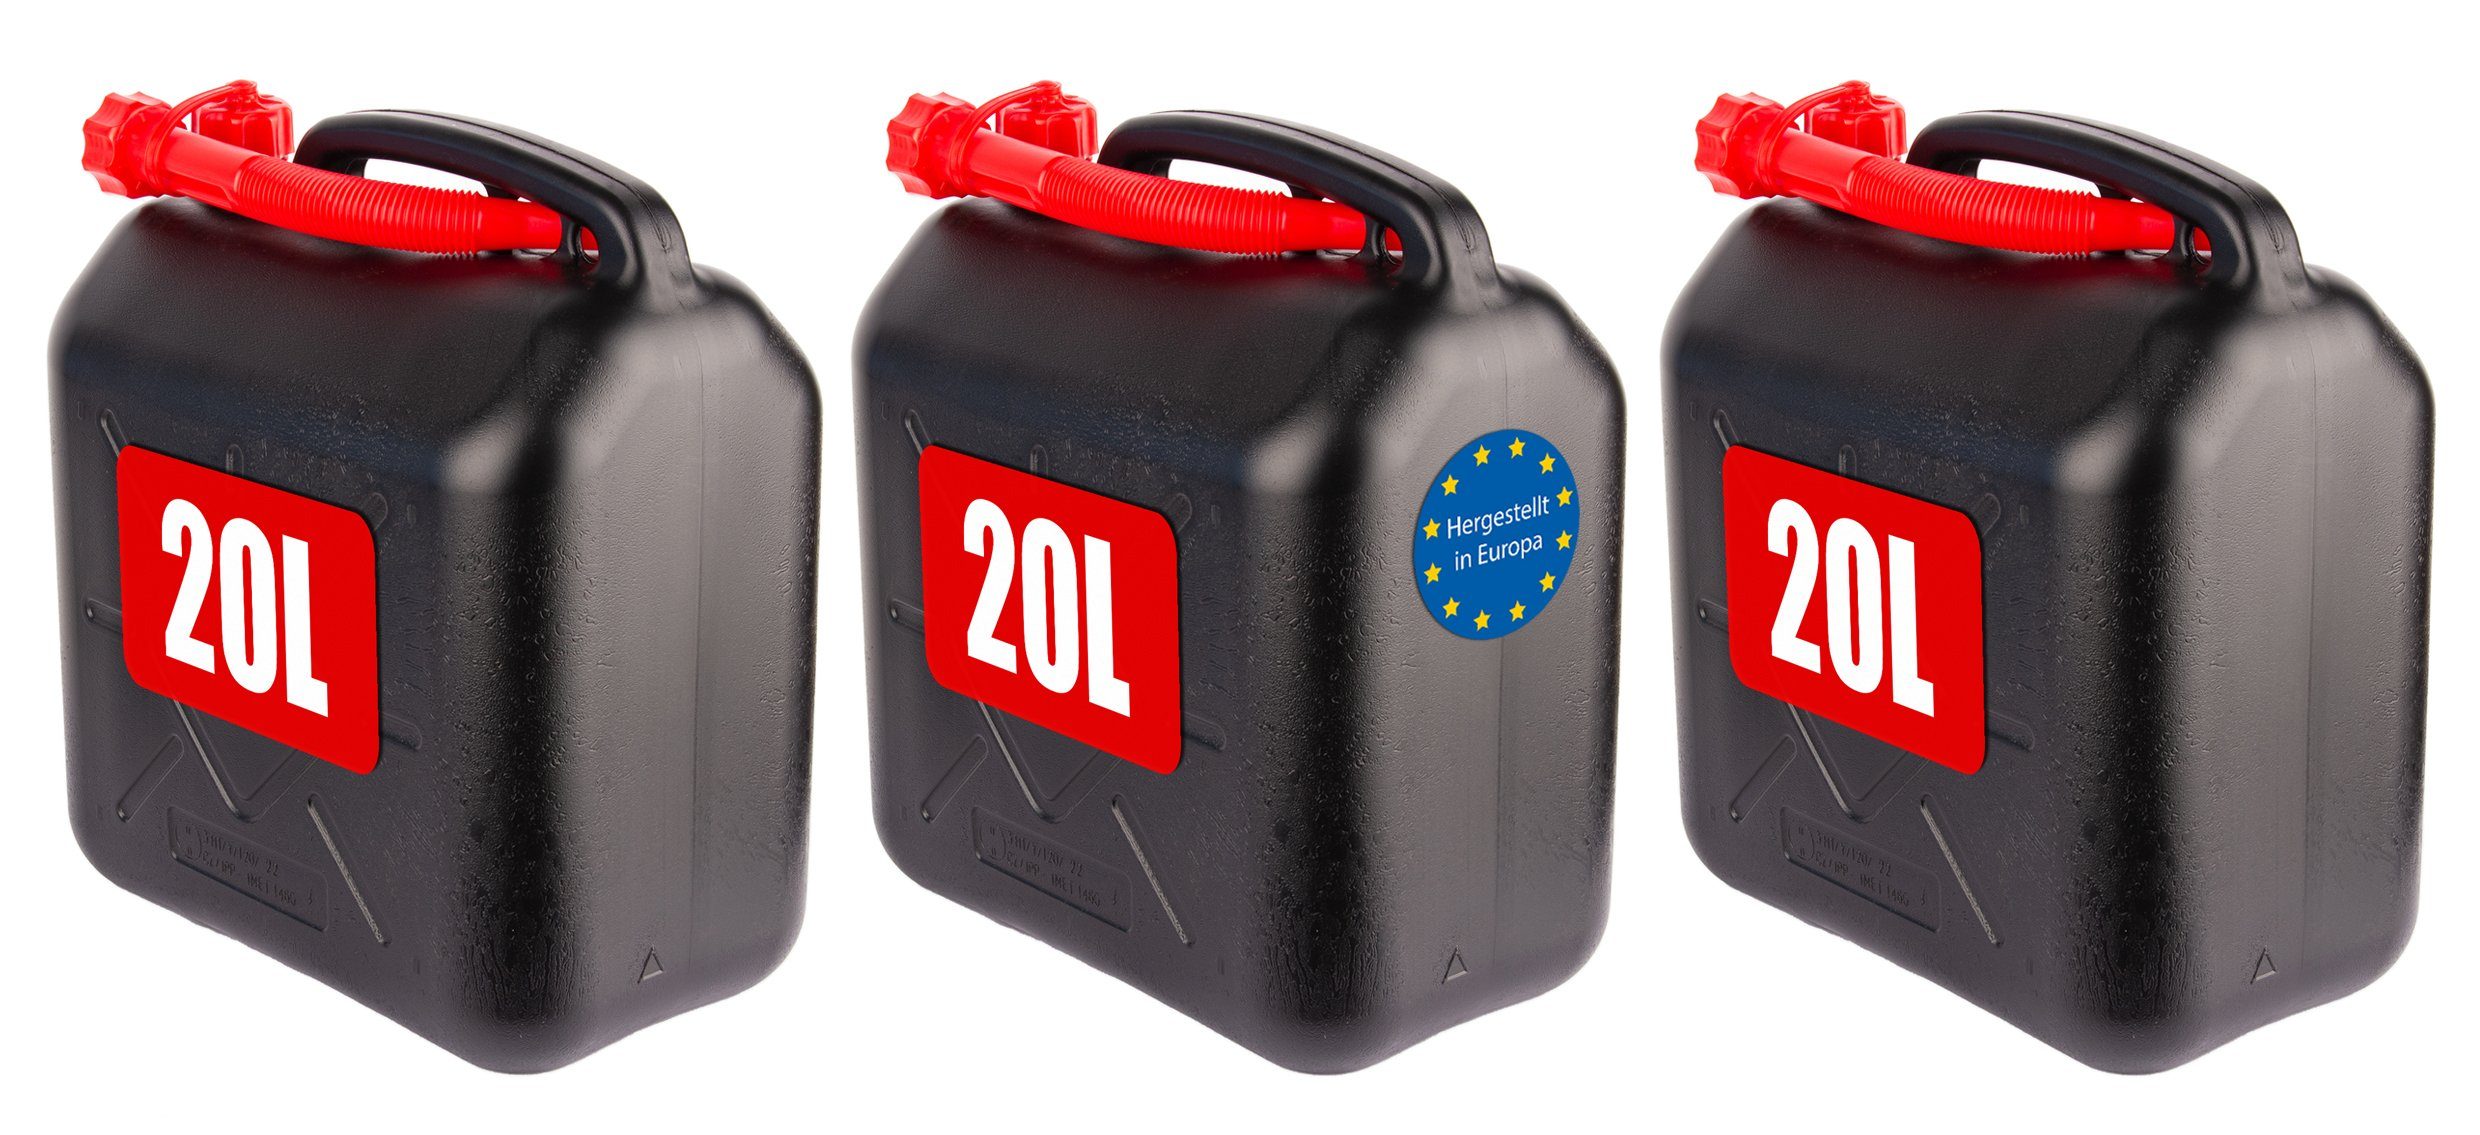 20L Stahlblech Kraftstoff Kanister, Metall Benzinkanister Reservekanister  mit Ausgie?er flexibel - Rot